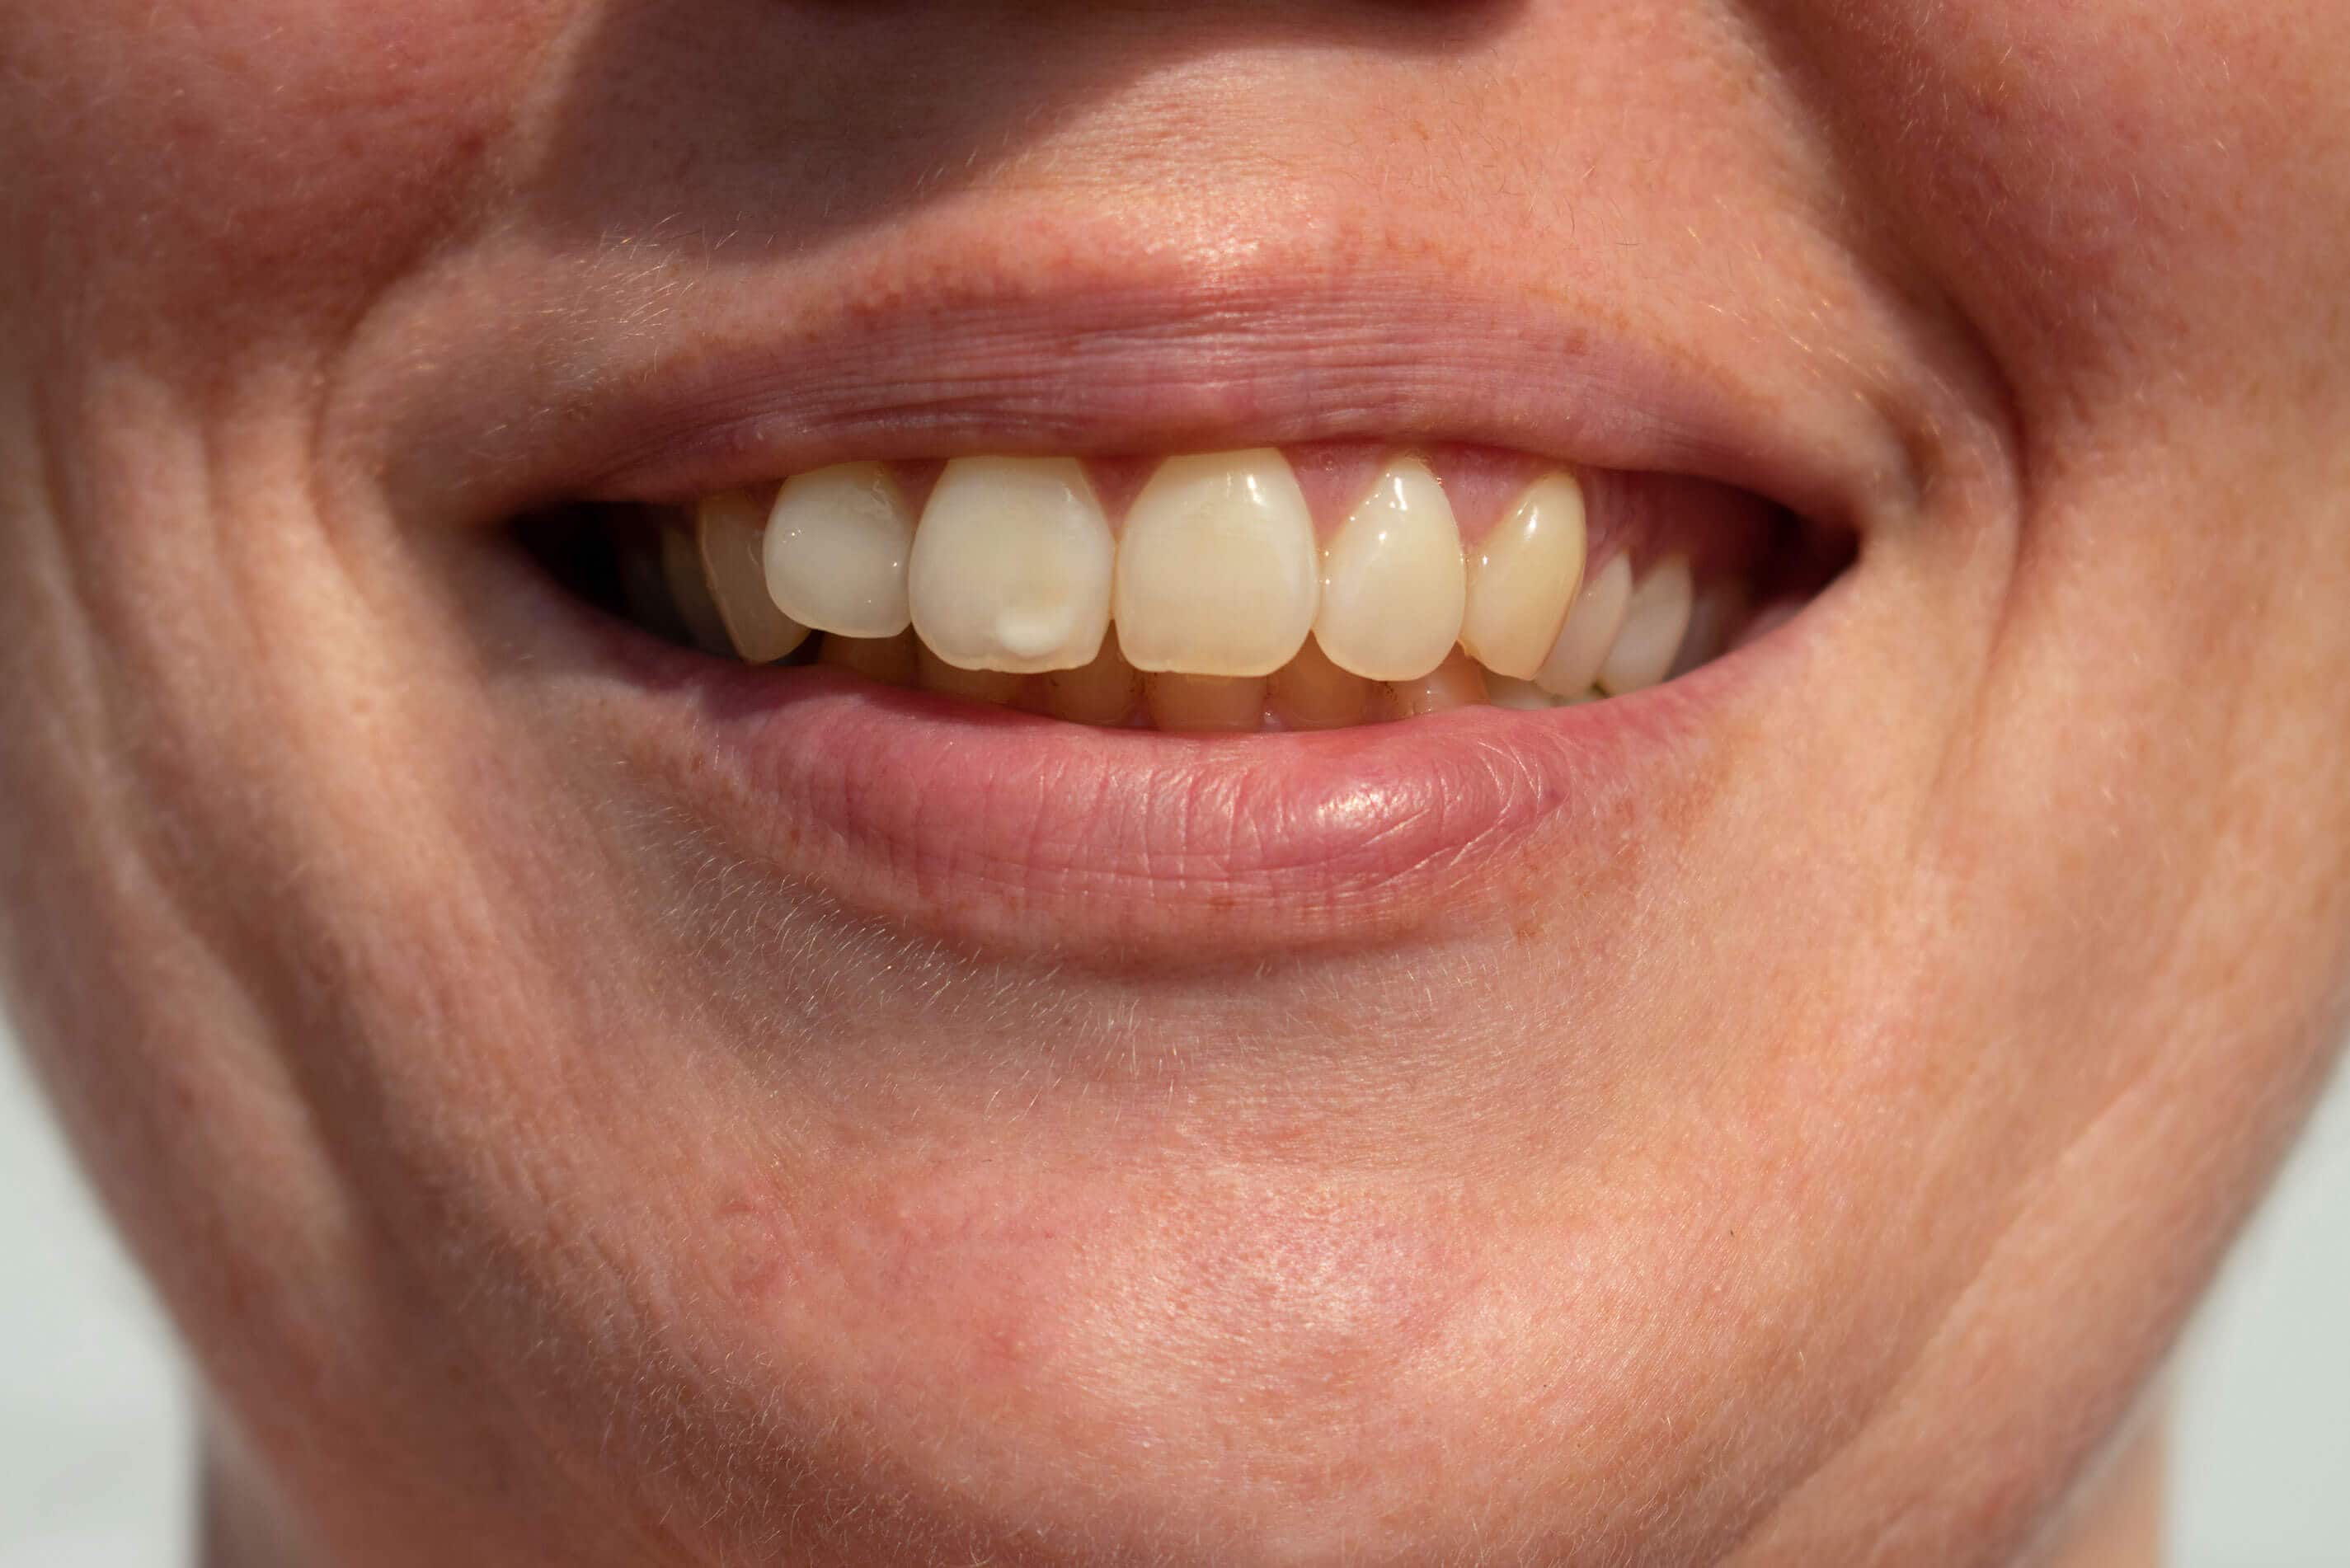 tooth spot women smiles revealing white